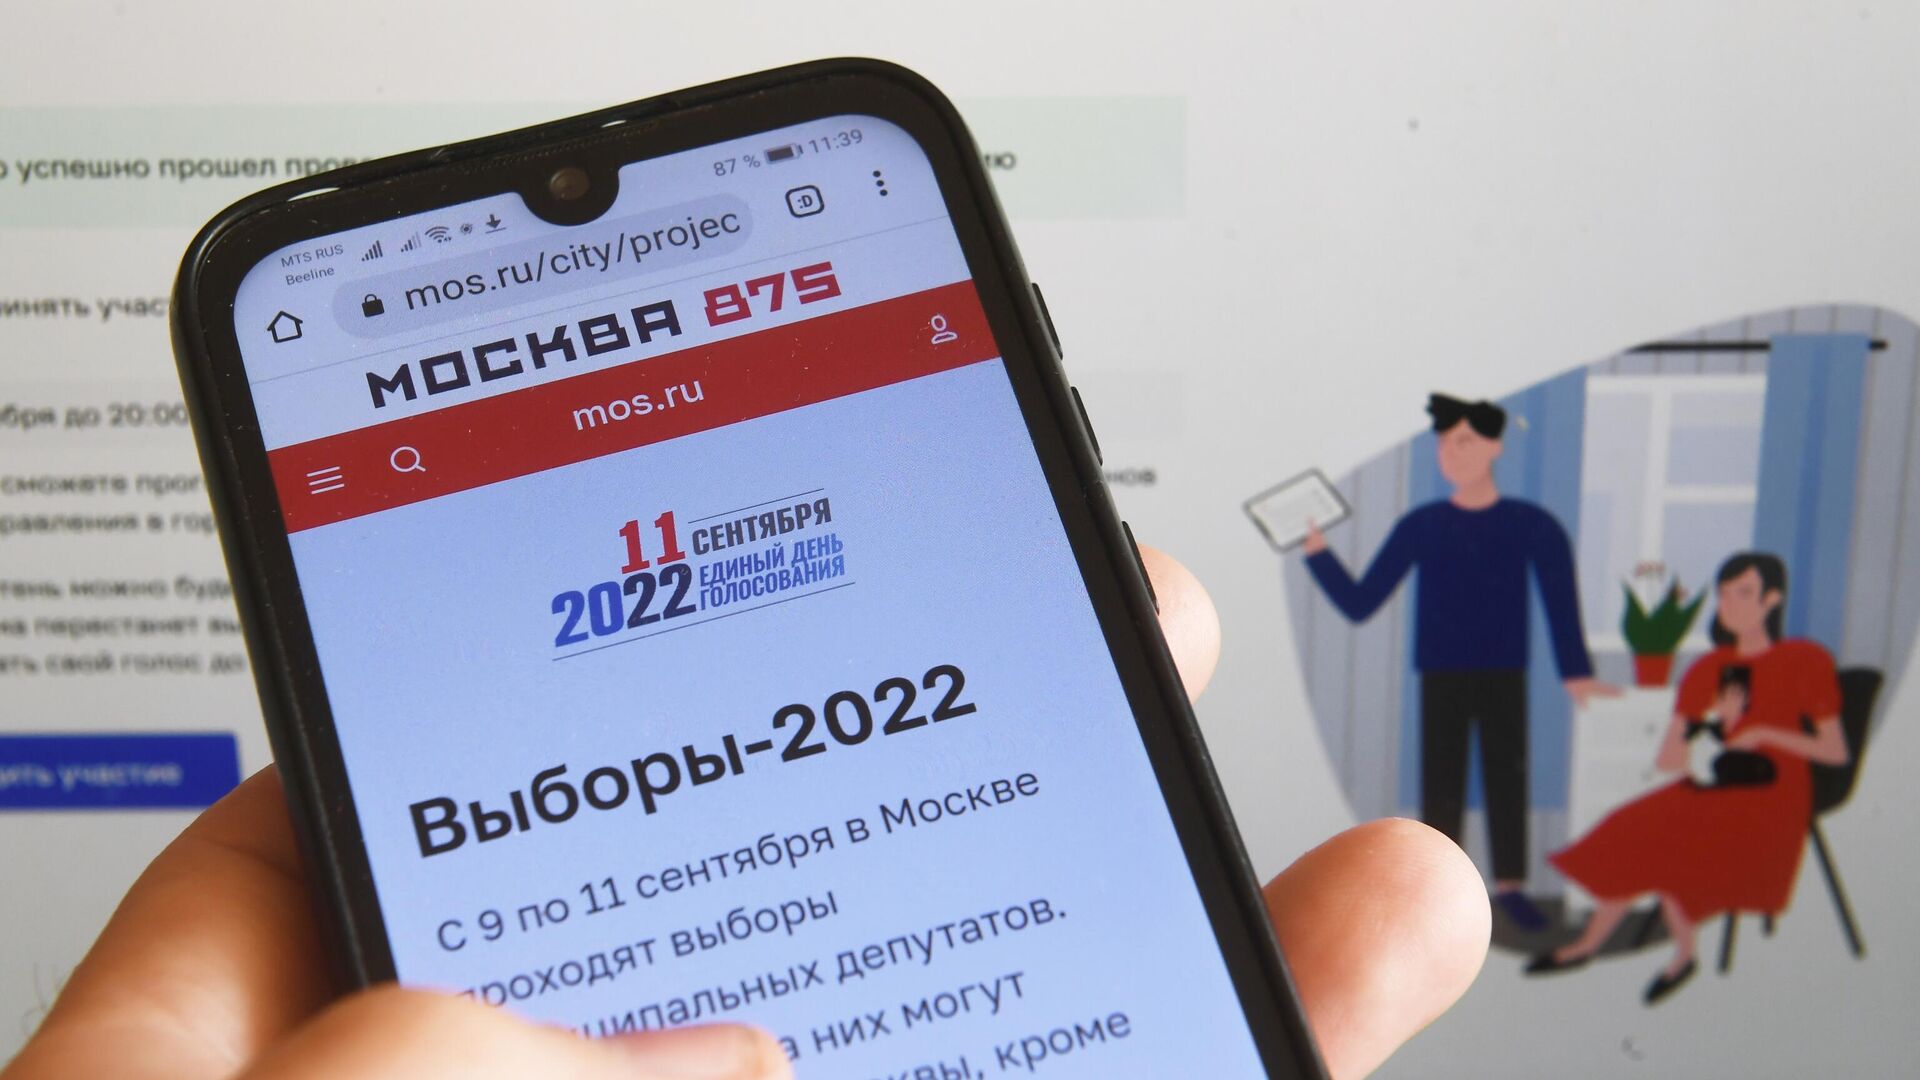 Можно ли проголосовать на мос ру. Электронное голосование. Выборы 2022 в Москве. Дистанционное электронное голосование 2022. Электронное голосование на выборах.